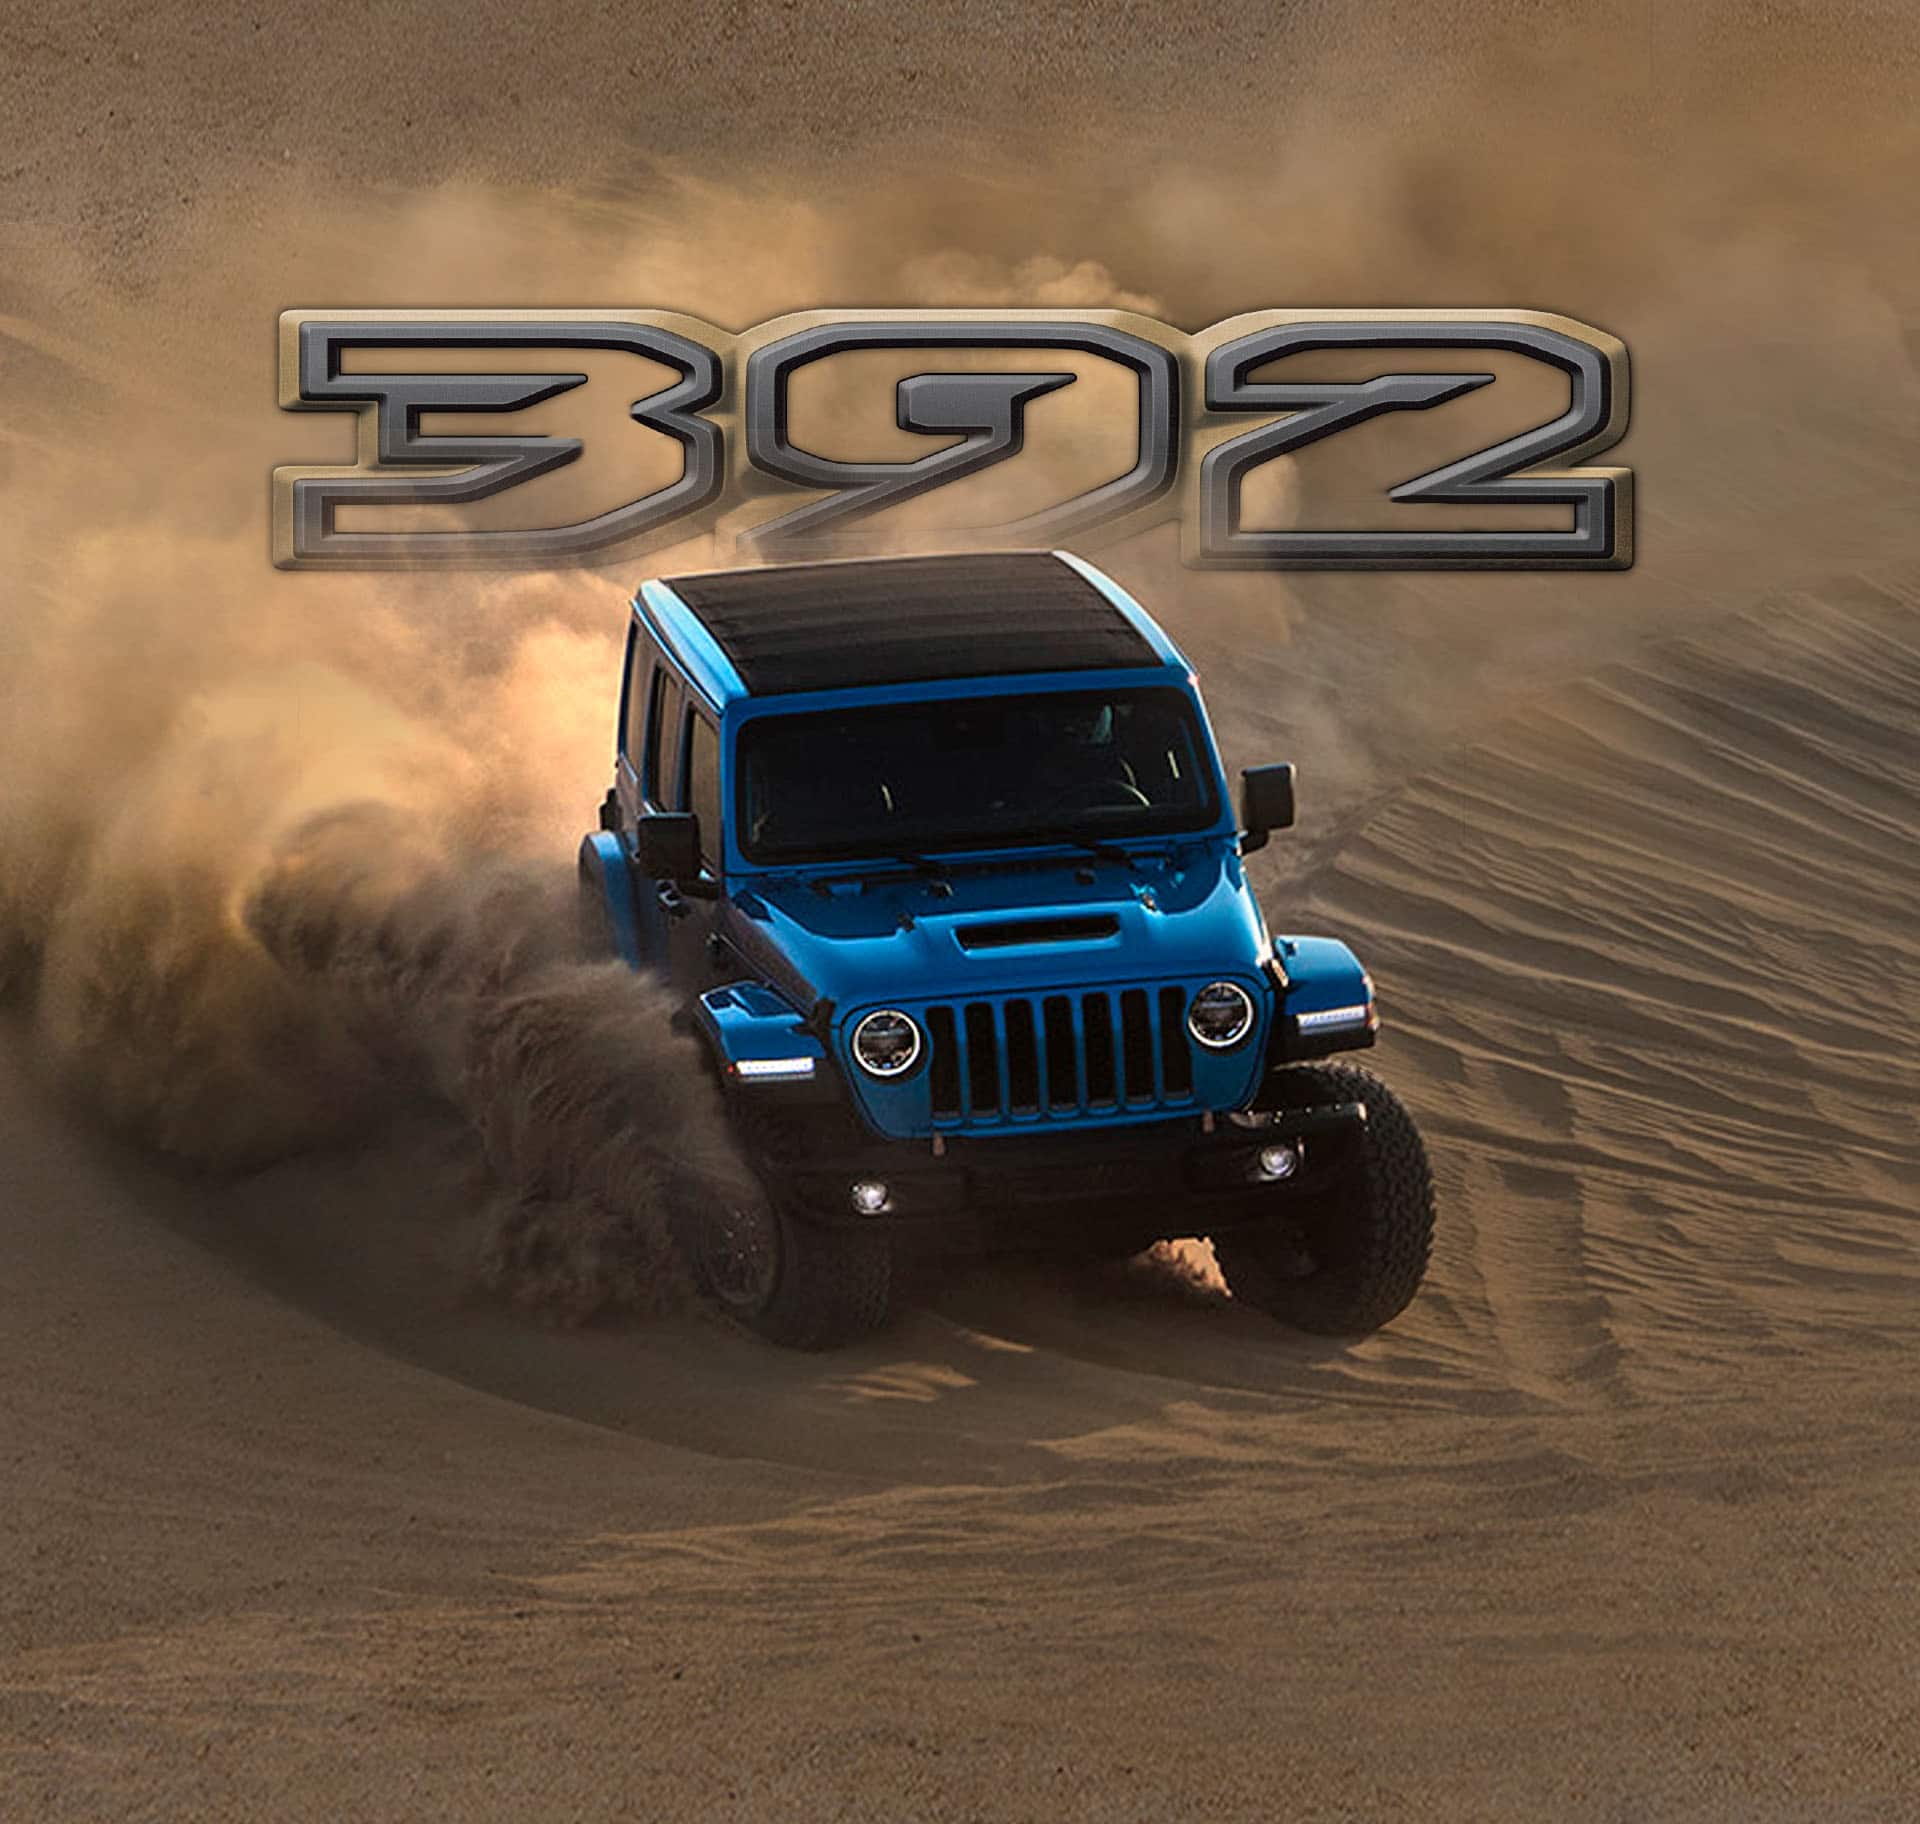 El logo 392 posicionado arriba de un Jeep Wrangler 392 2022 bajando una cuesta de arena, levantando polvo en su recorrido.